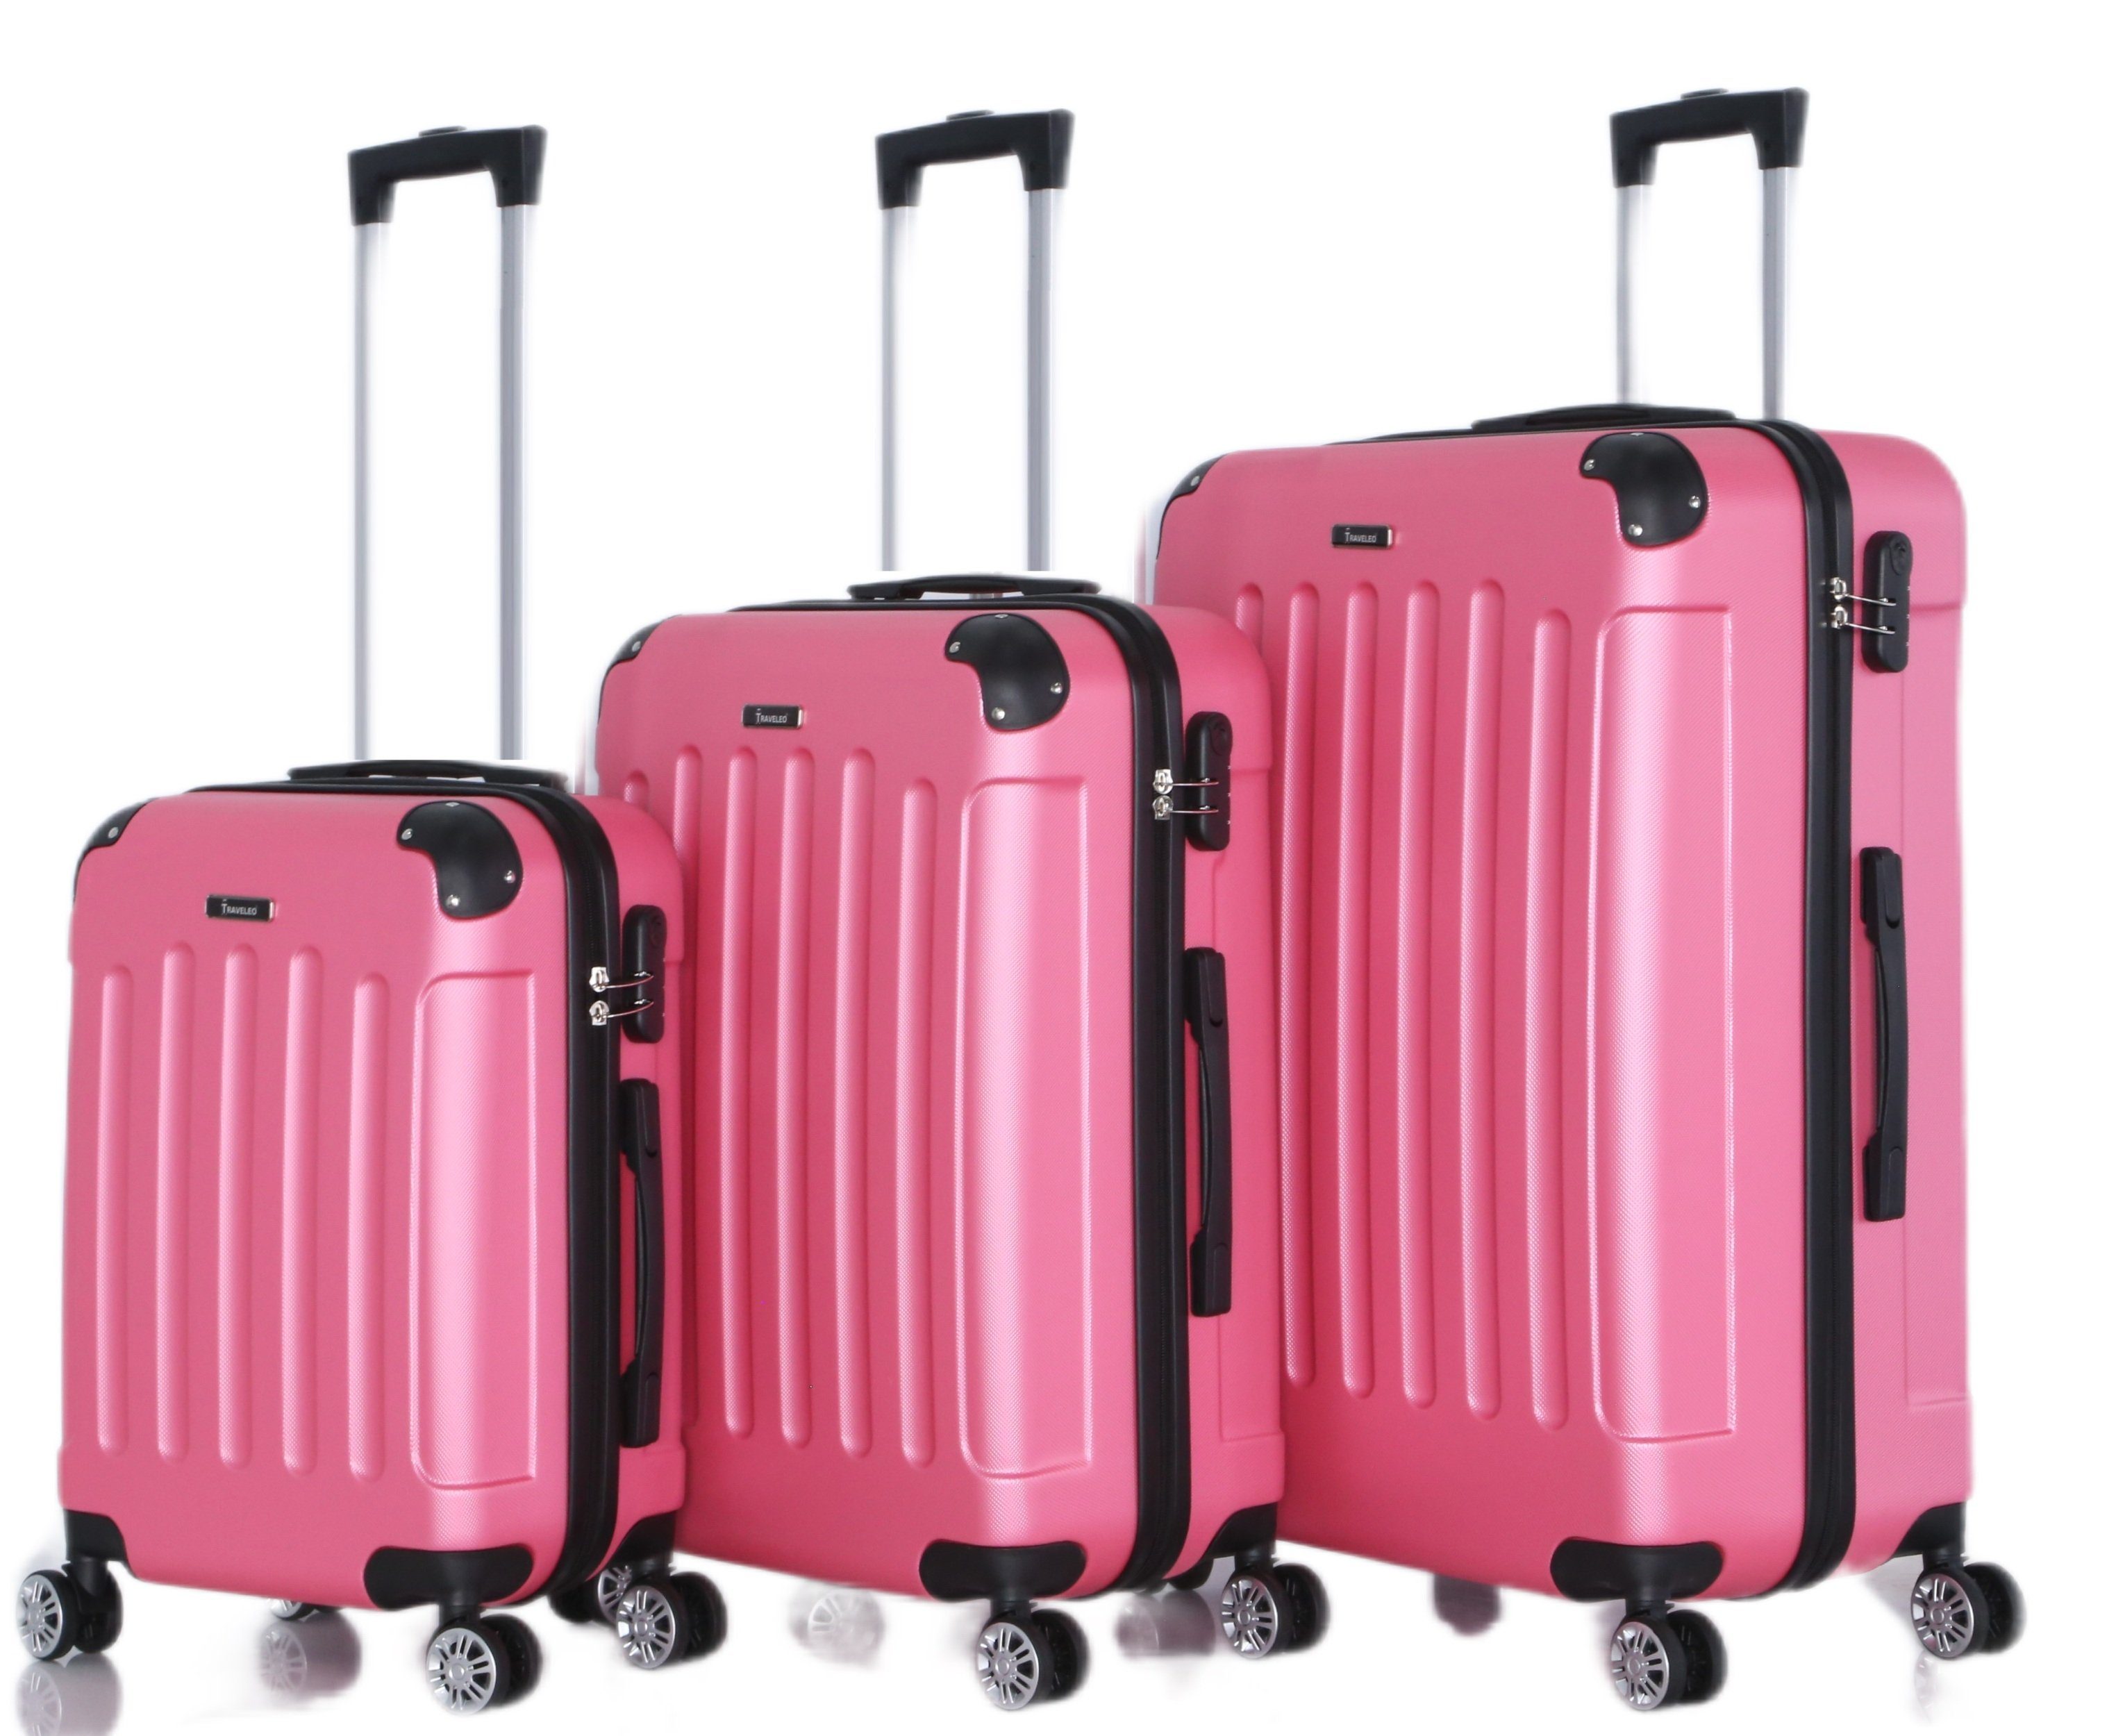 Rungassi Kofferset Hartschalenkoffer Trolley Reisekoffer Koffer Set Rungassi pink ABS01